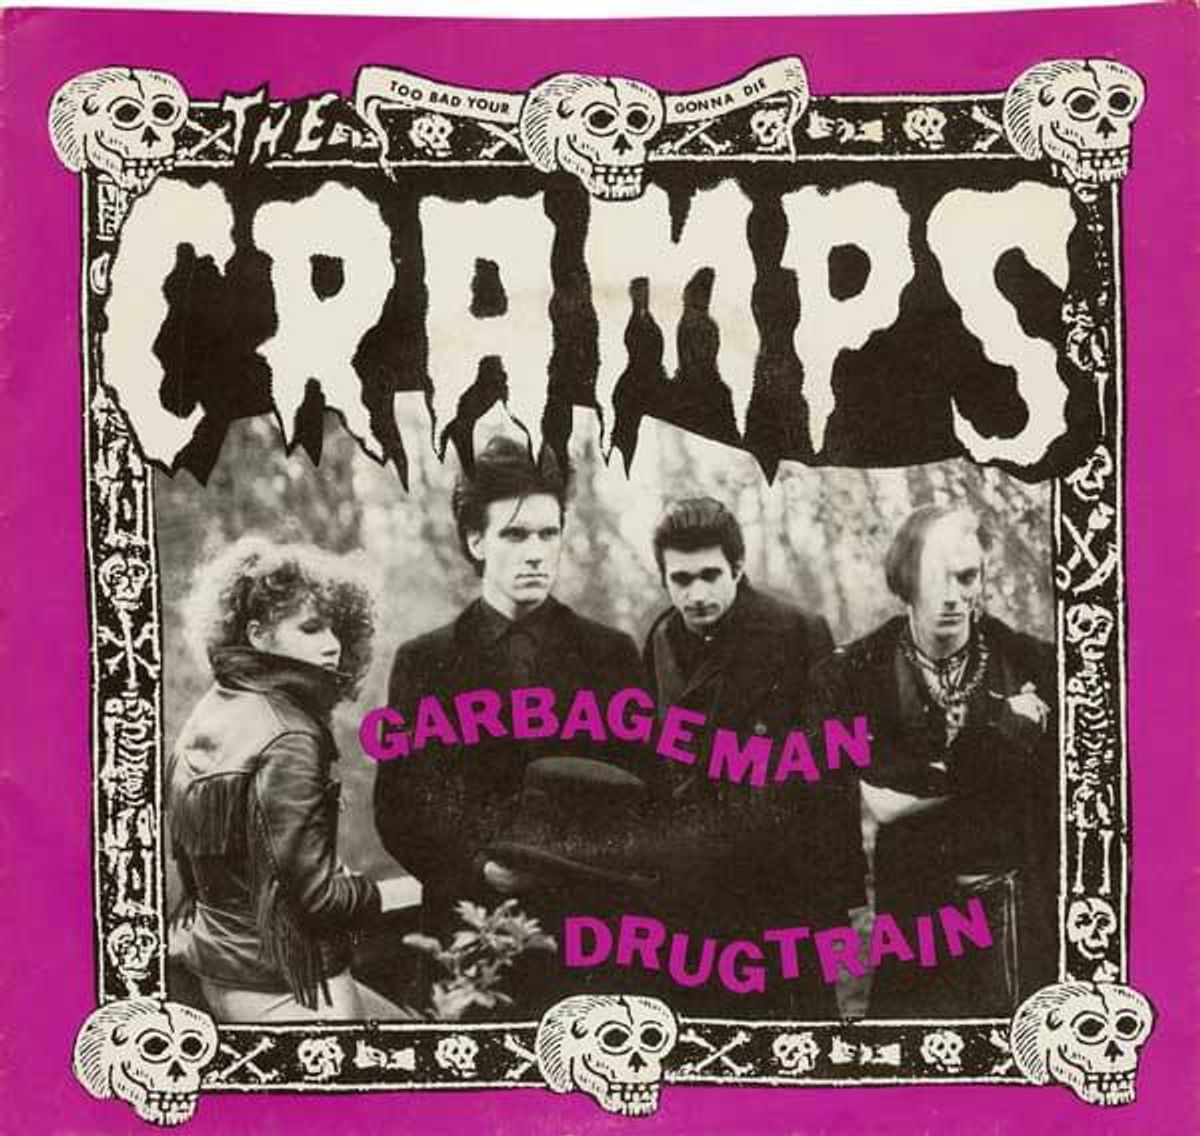 #Bassistloos - The Cramps - Garbageman (1980)